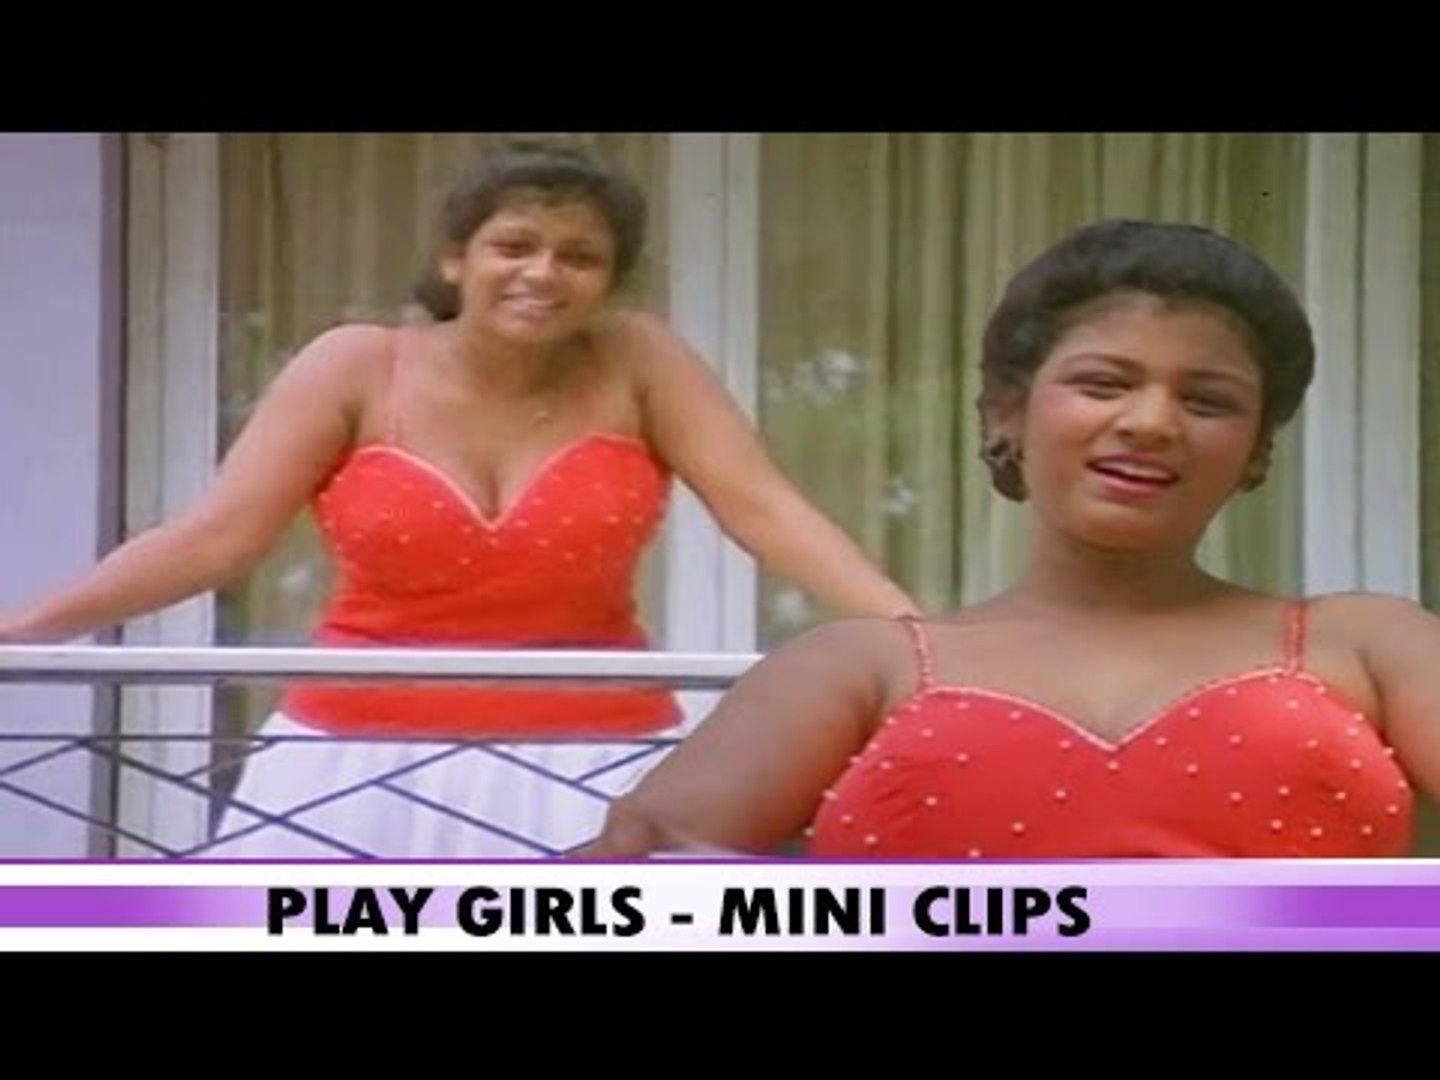 Tamil sex movie play